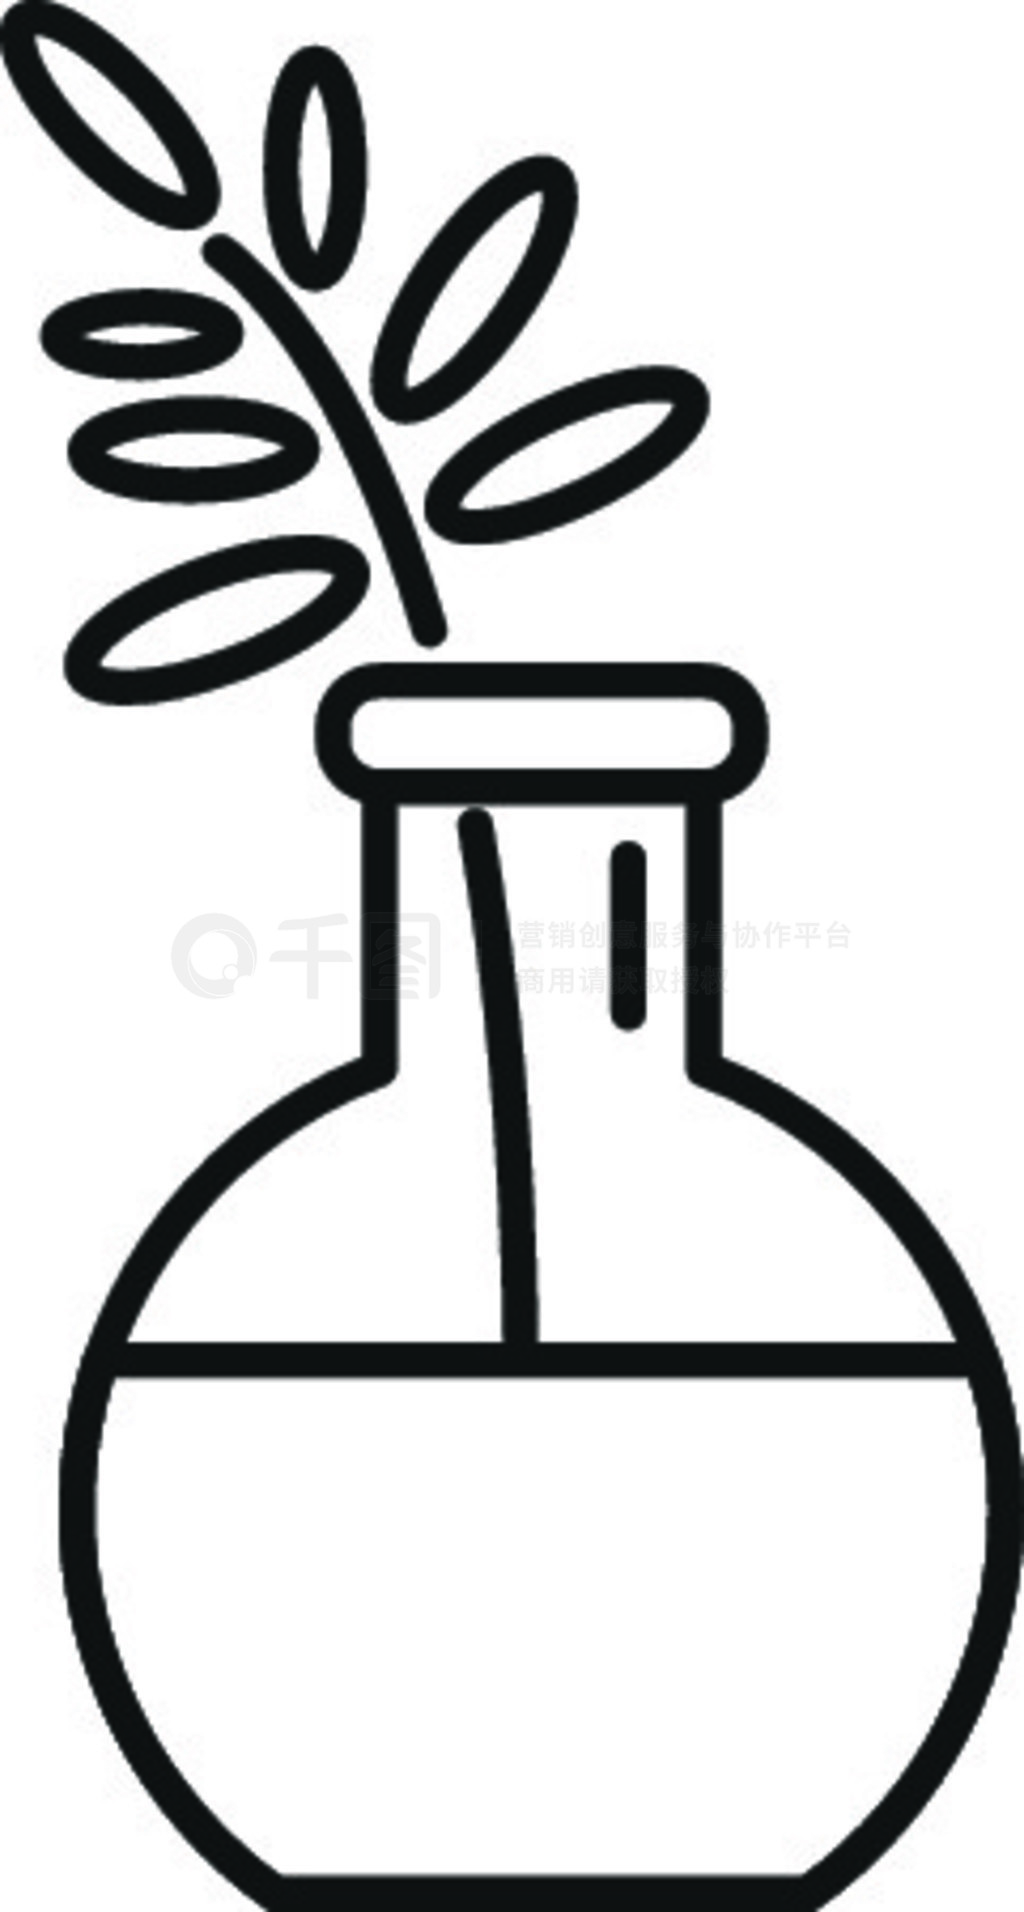 精油植物瓶图标。概述精油植物烧瓶矢量图标,用于在白色背景上隔离的网页设计。精油植物瓶图标,轮廓样式模板免费下载_eps格式_241像素_编号41963011